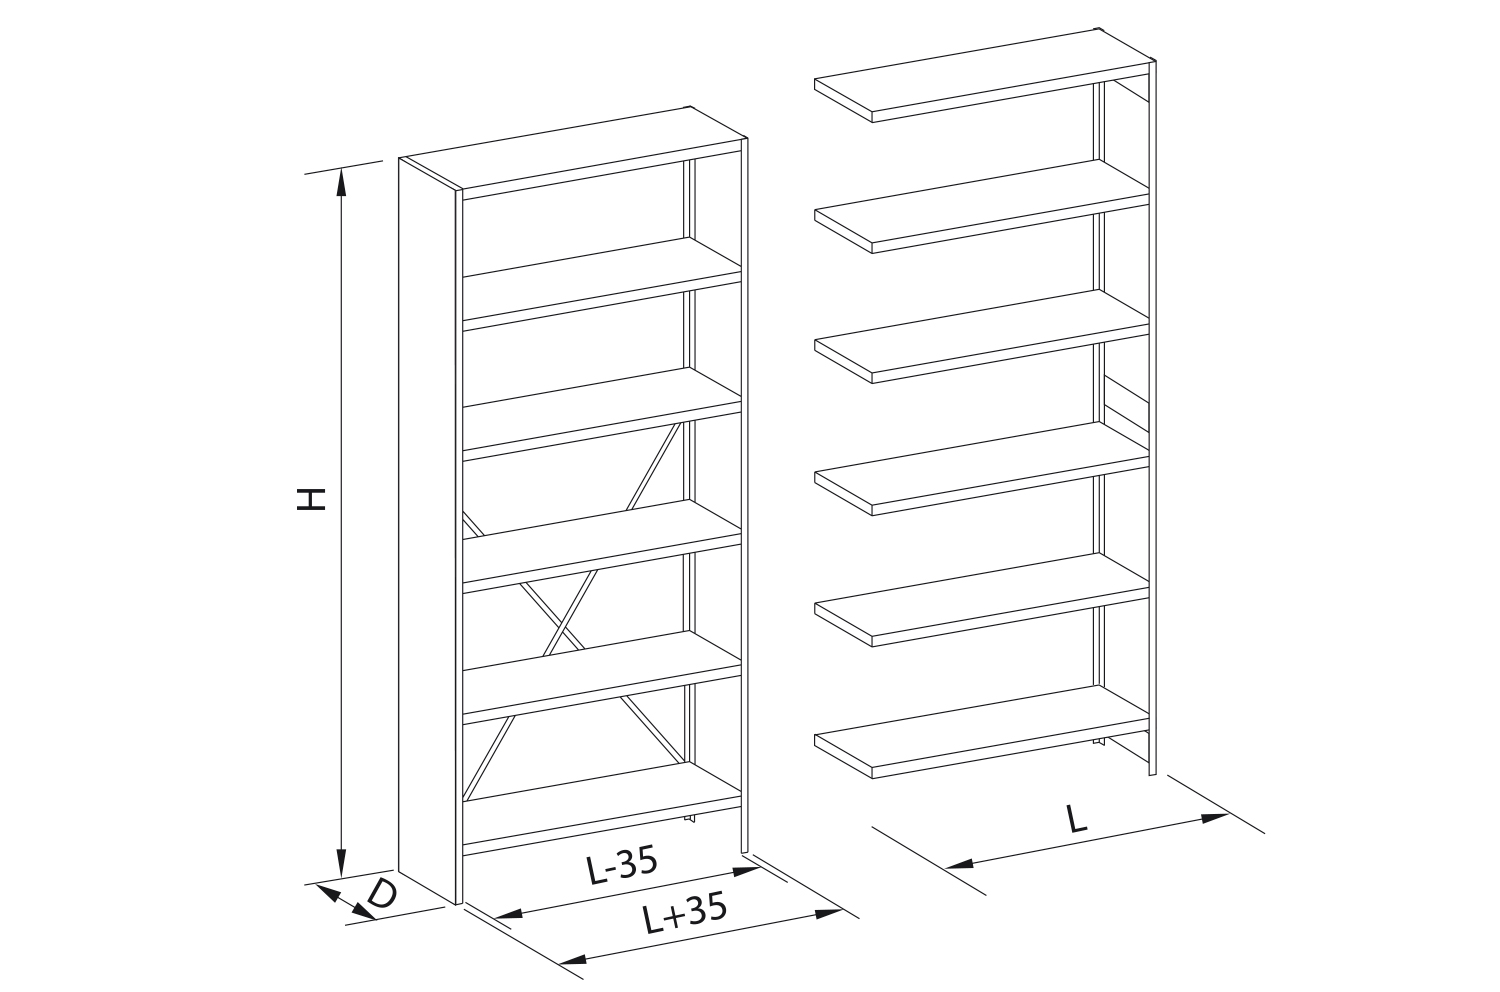 Shelf components